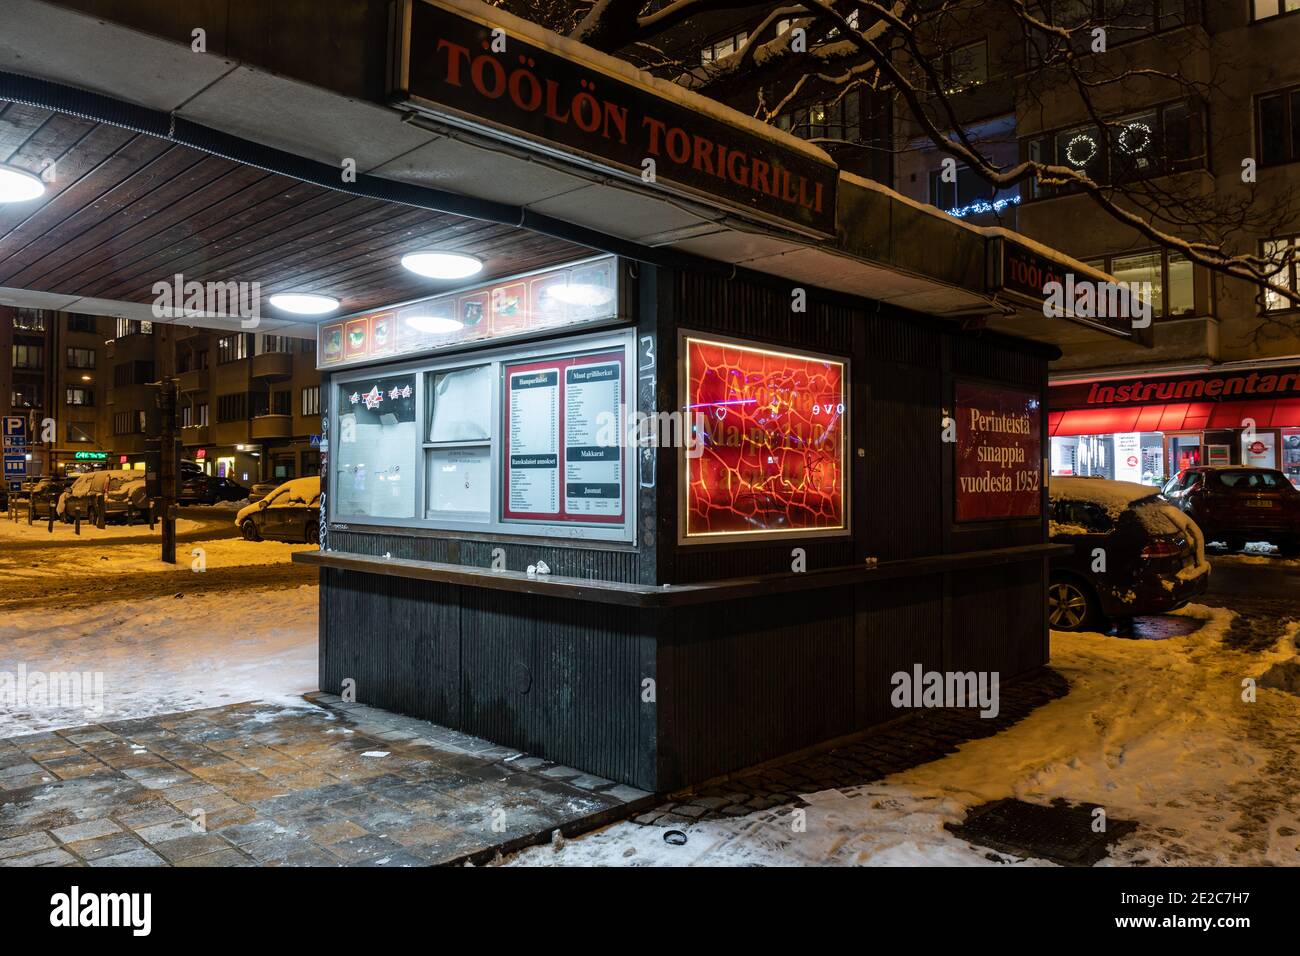 Töölön Torigrillei nach Einbruch der Dunkelheit. Legendärer Fastfood-Kiosk am Töölöntori-Platz in Helsinki, Finnland Stockfoto